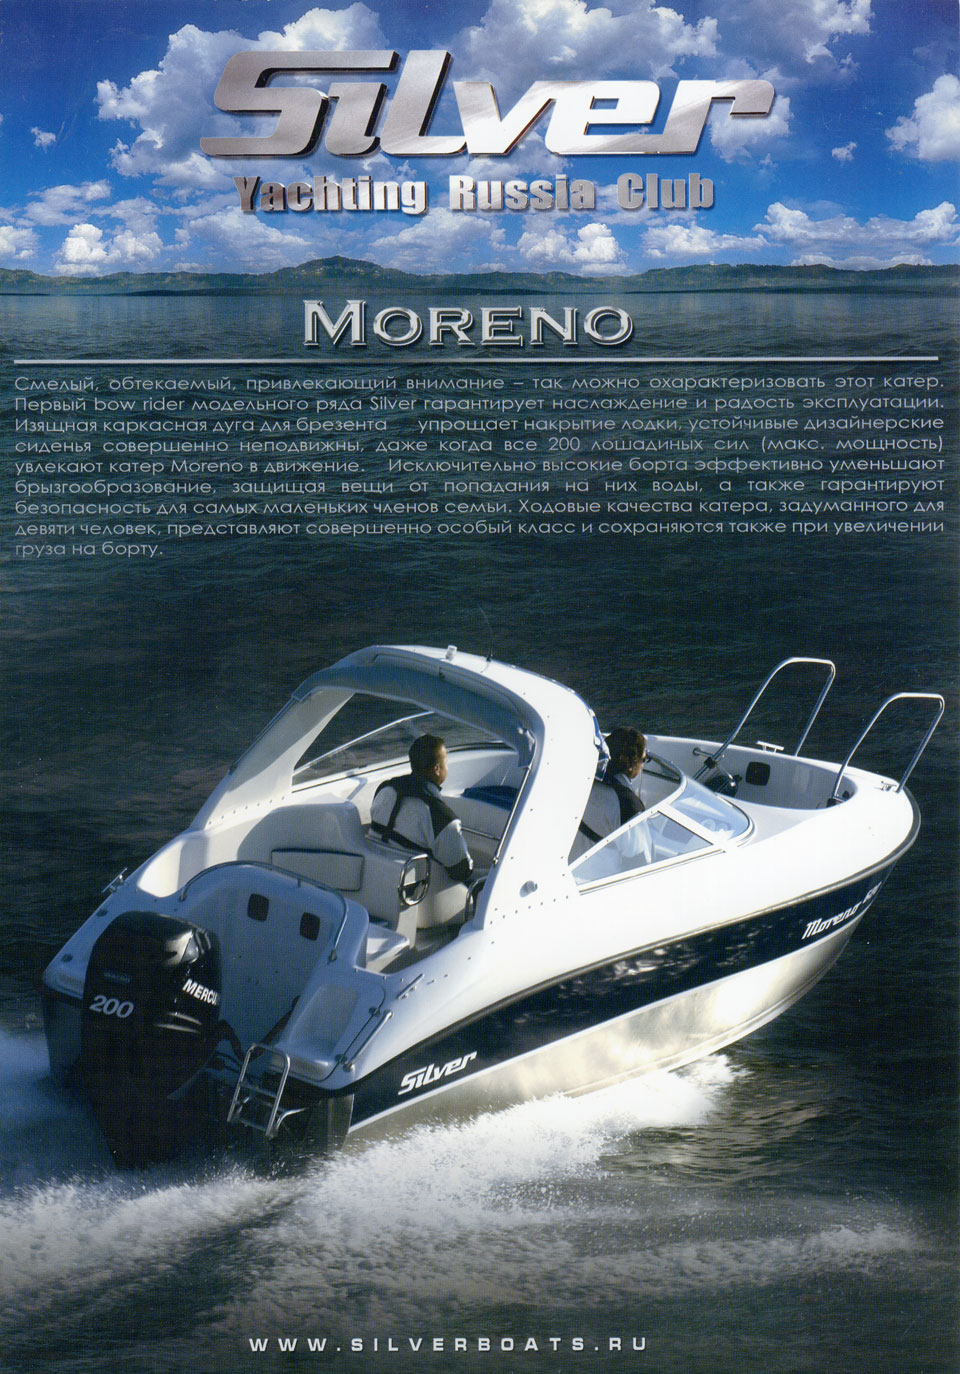  Silver Moreno 620